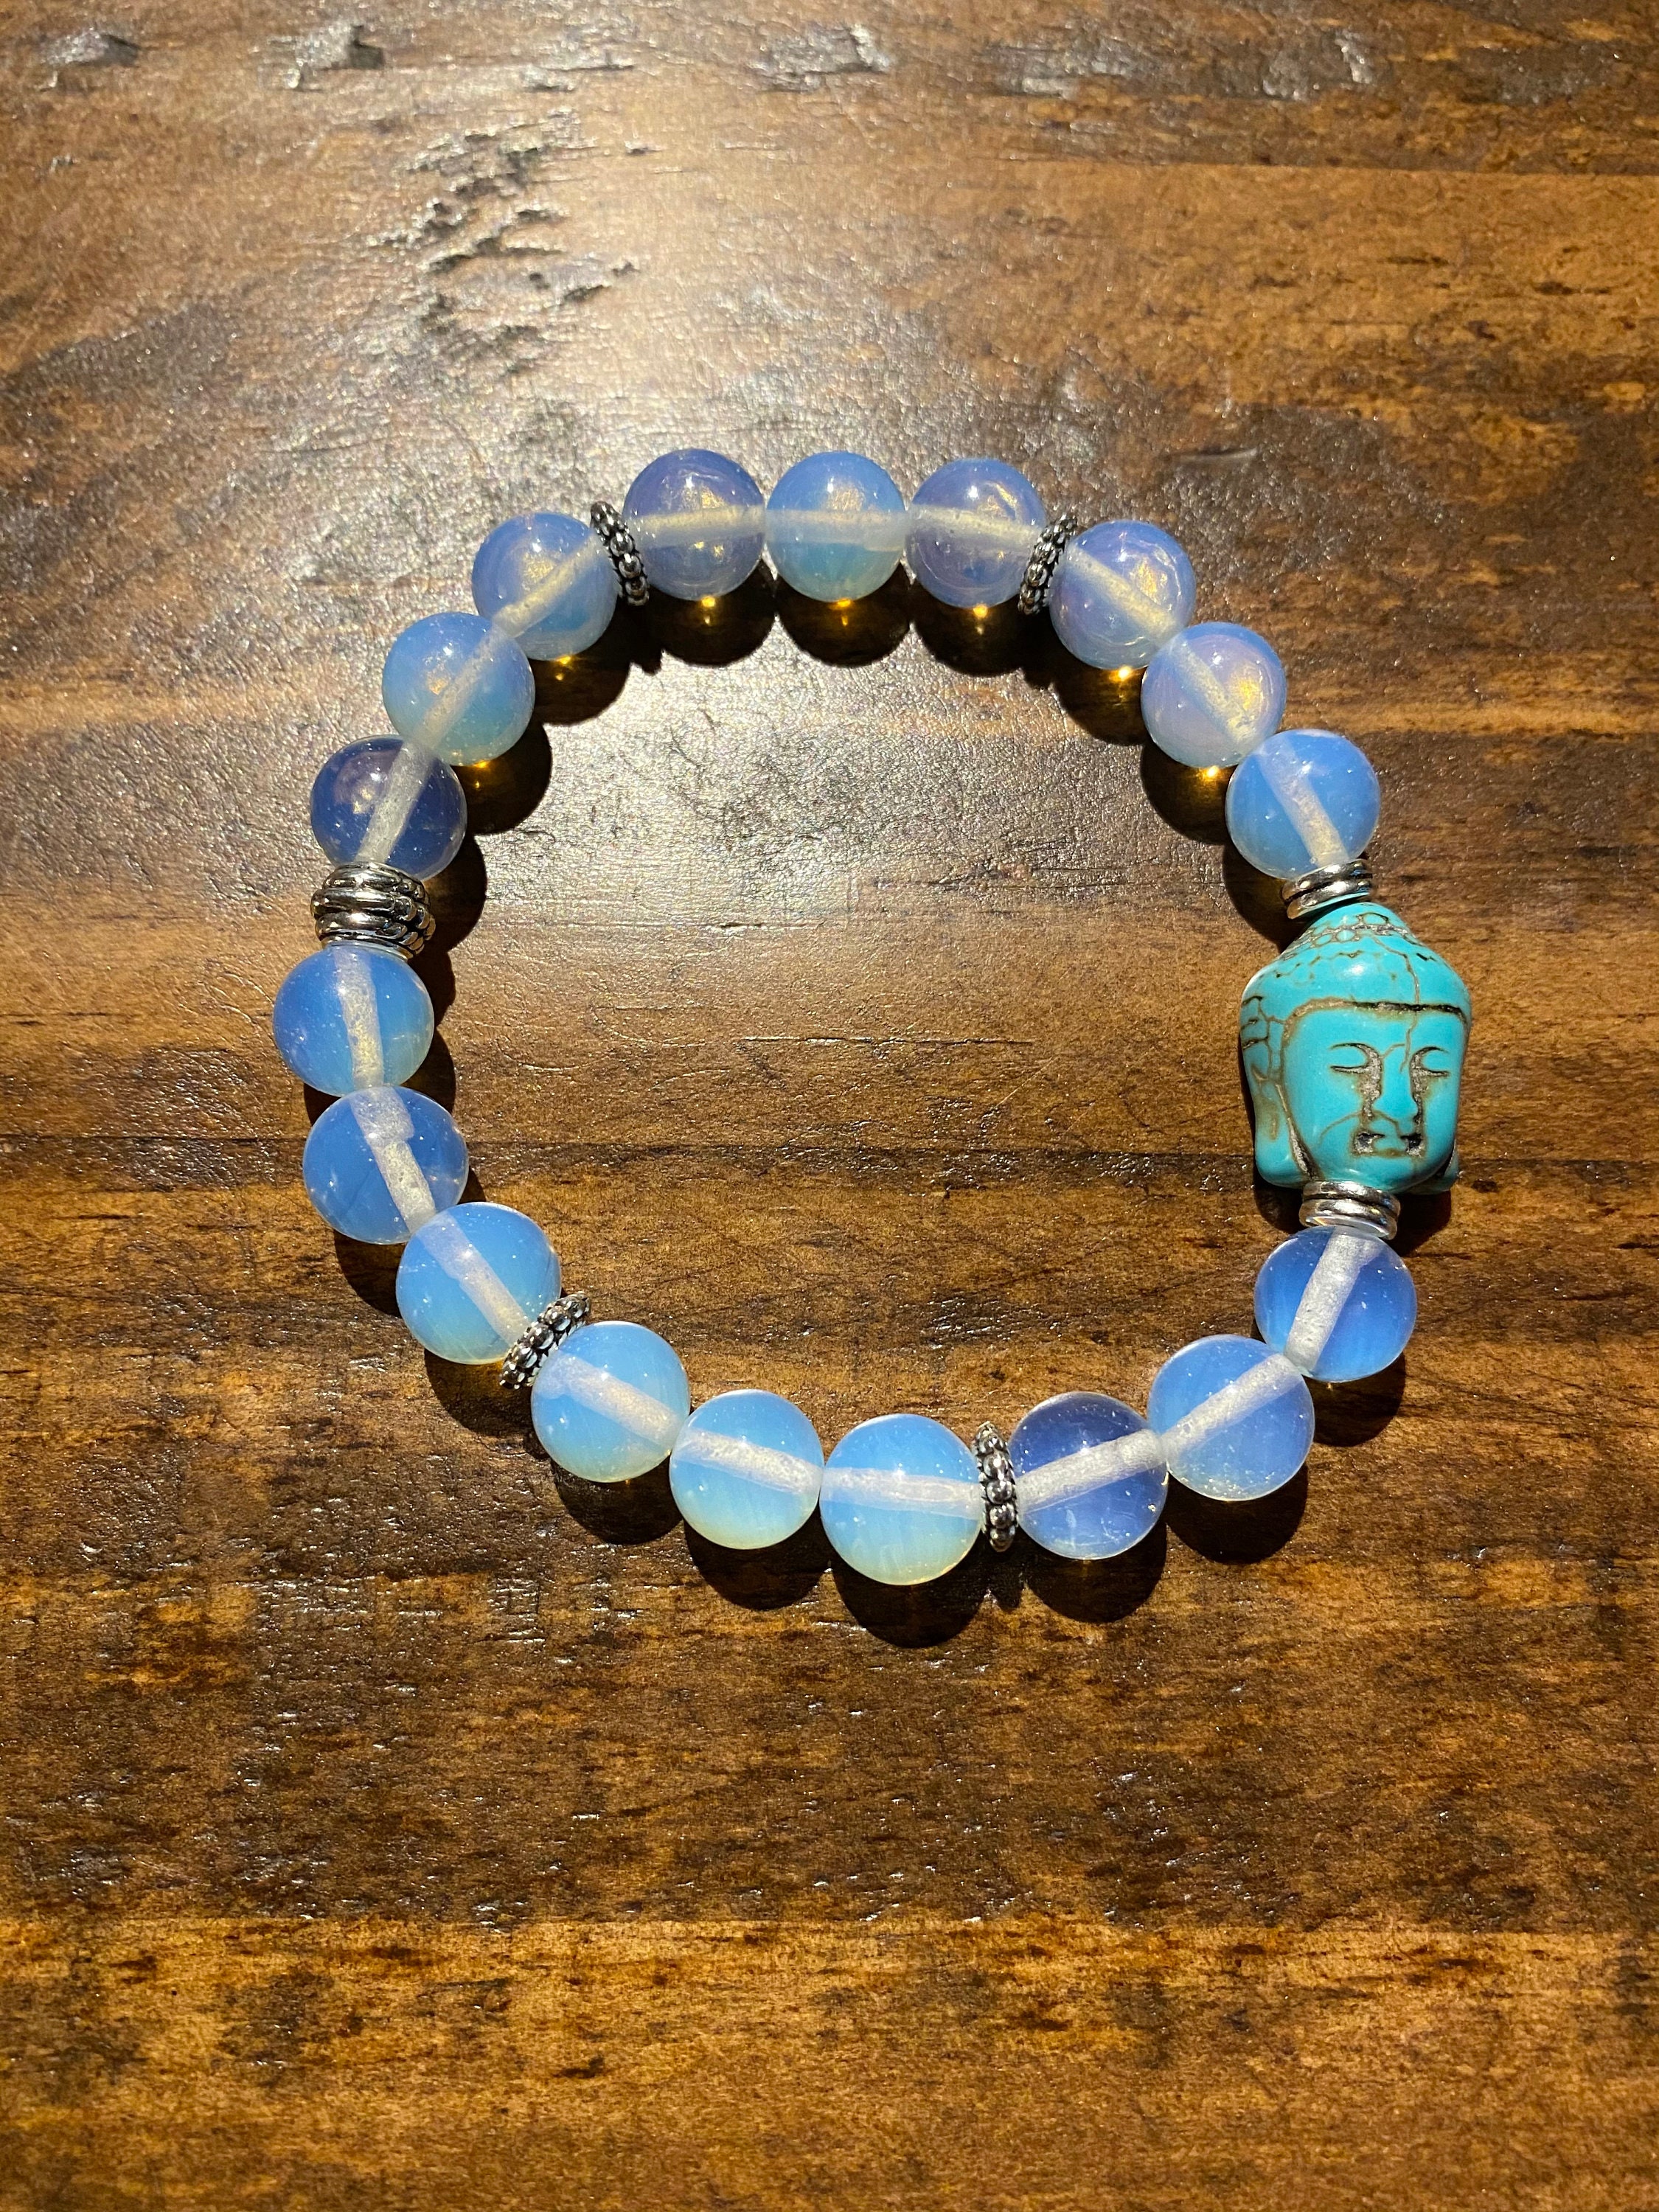 Beautiful opalite bracelet set of 4 pieces | gemstone/crystal jewelry